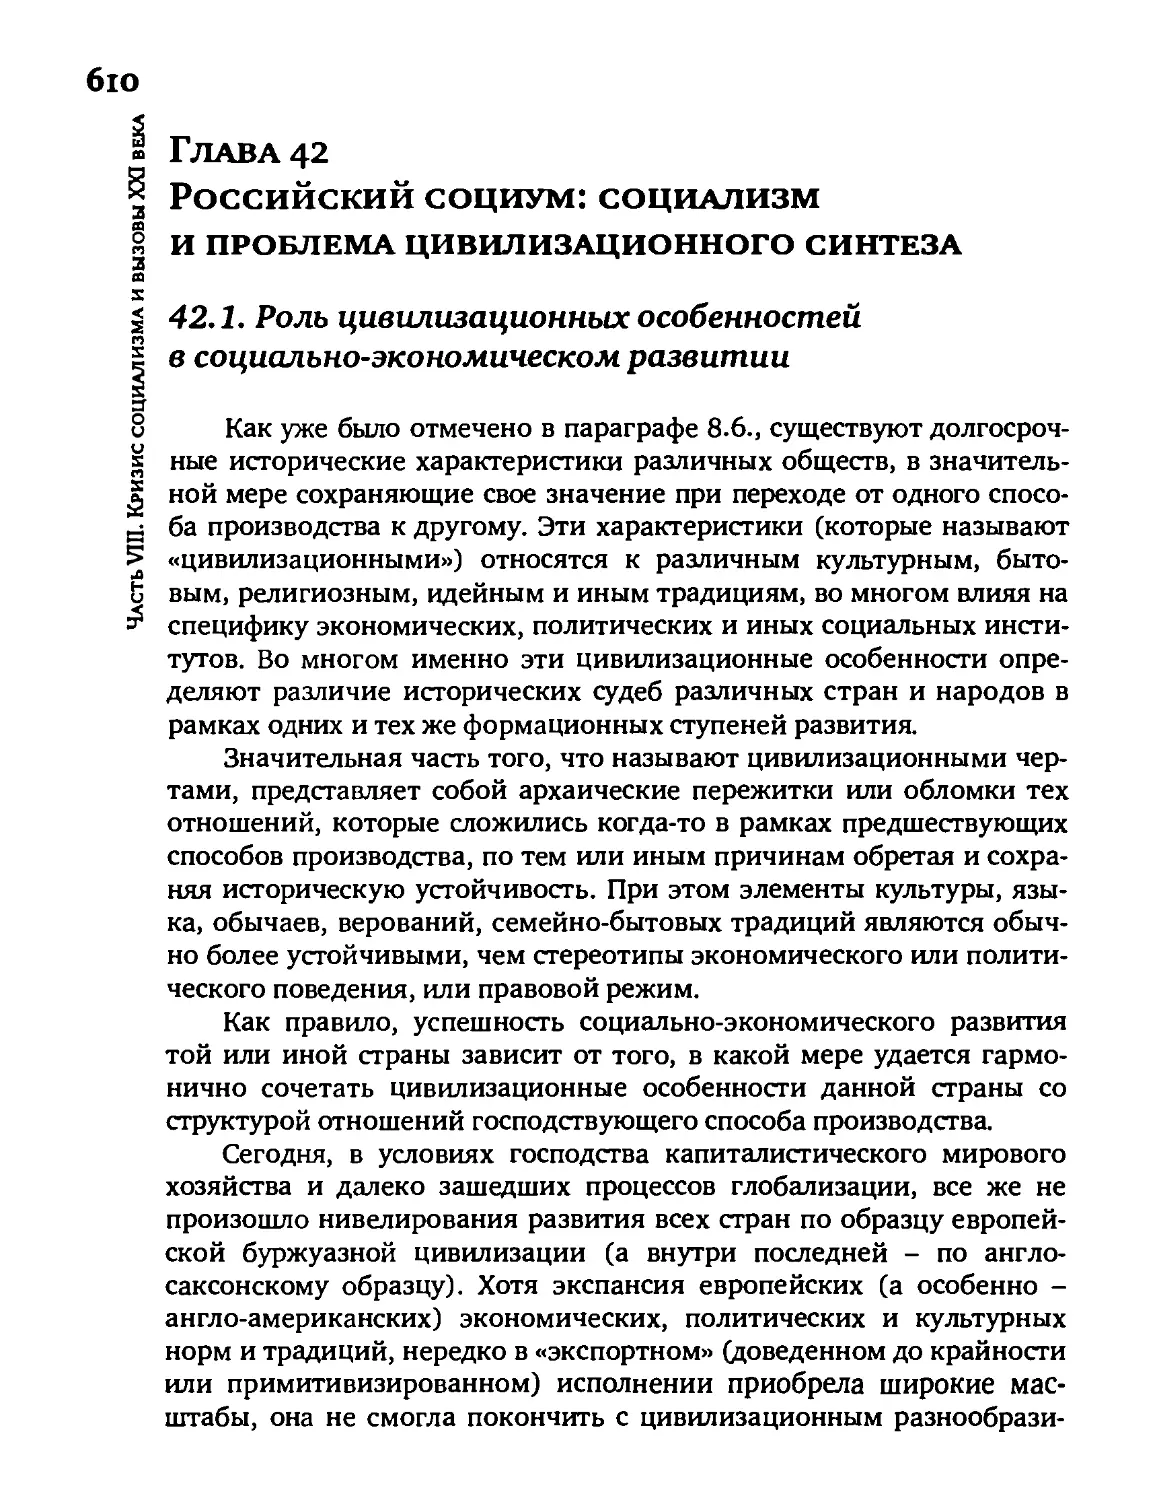 Глава 42. Российский социум: социализм и проблема цивилизационного синтеза